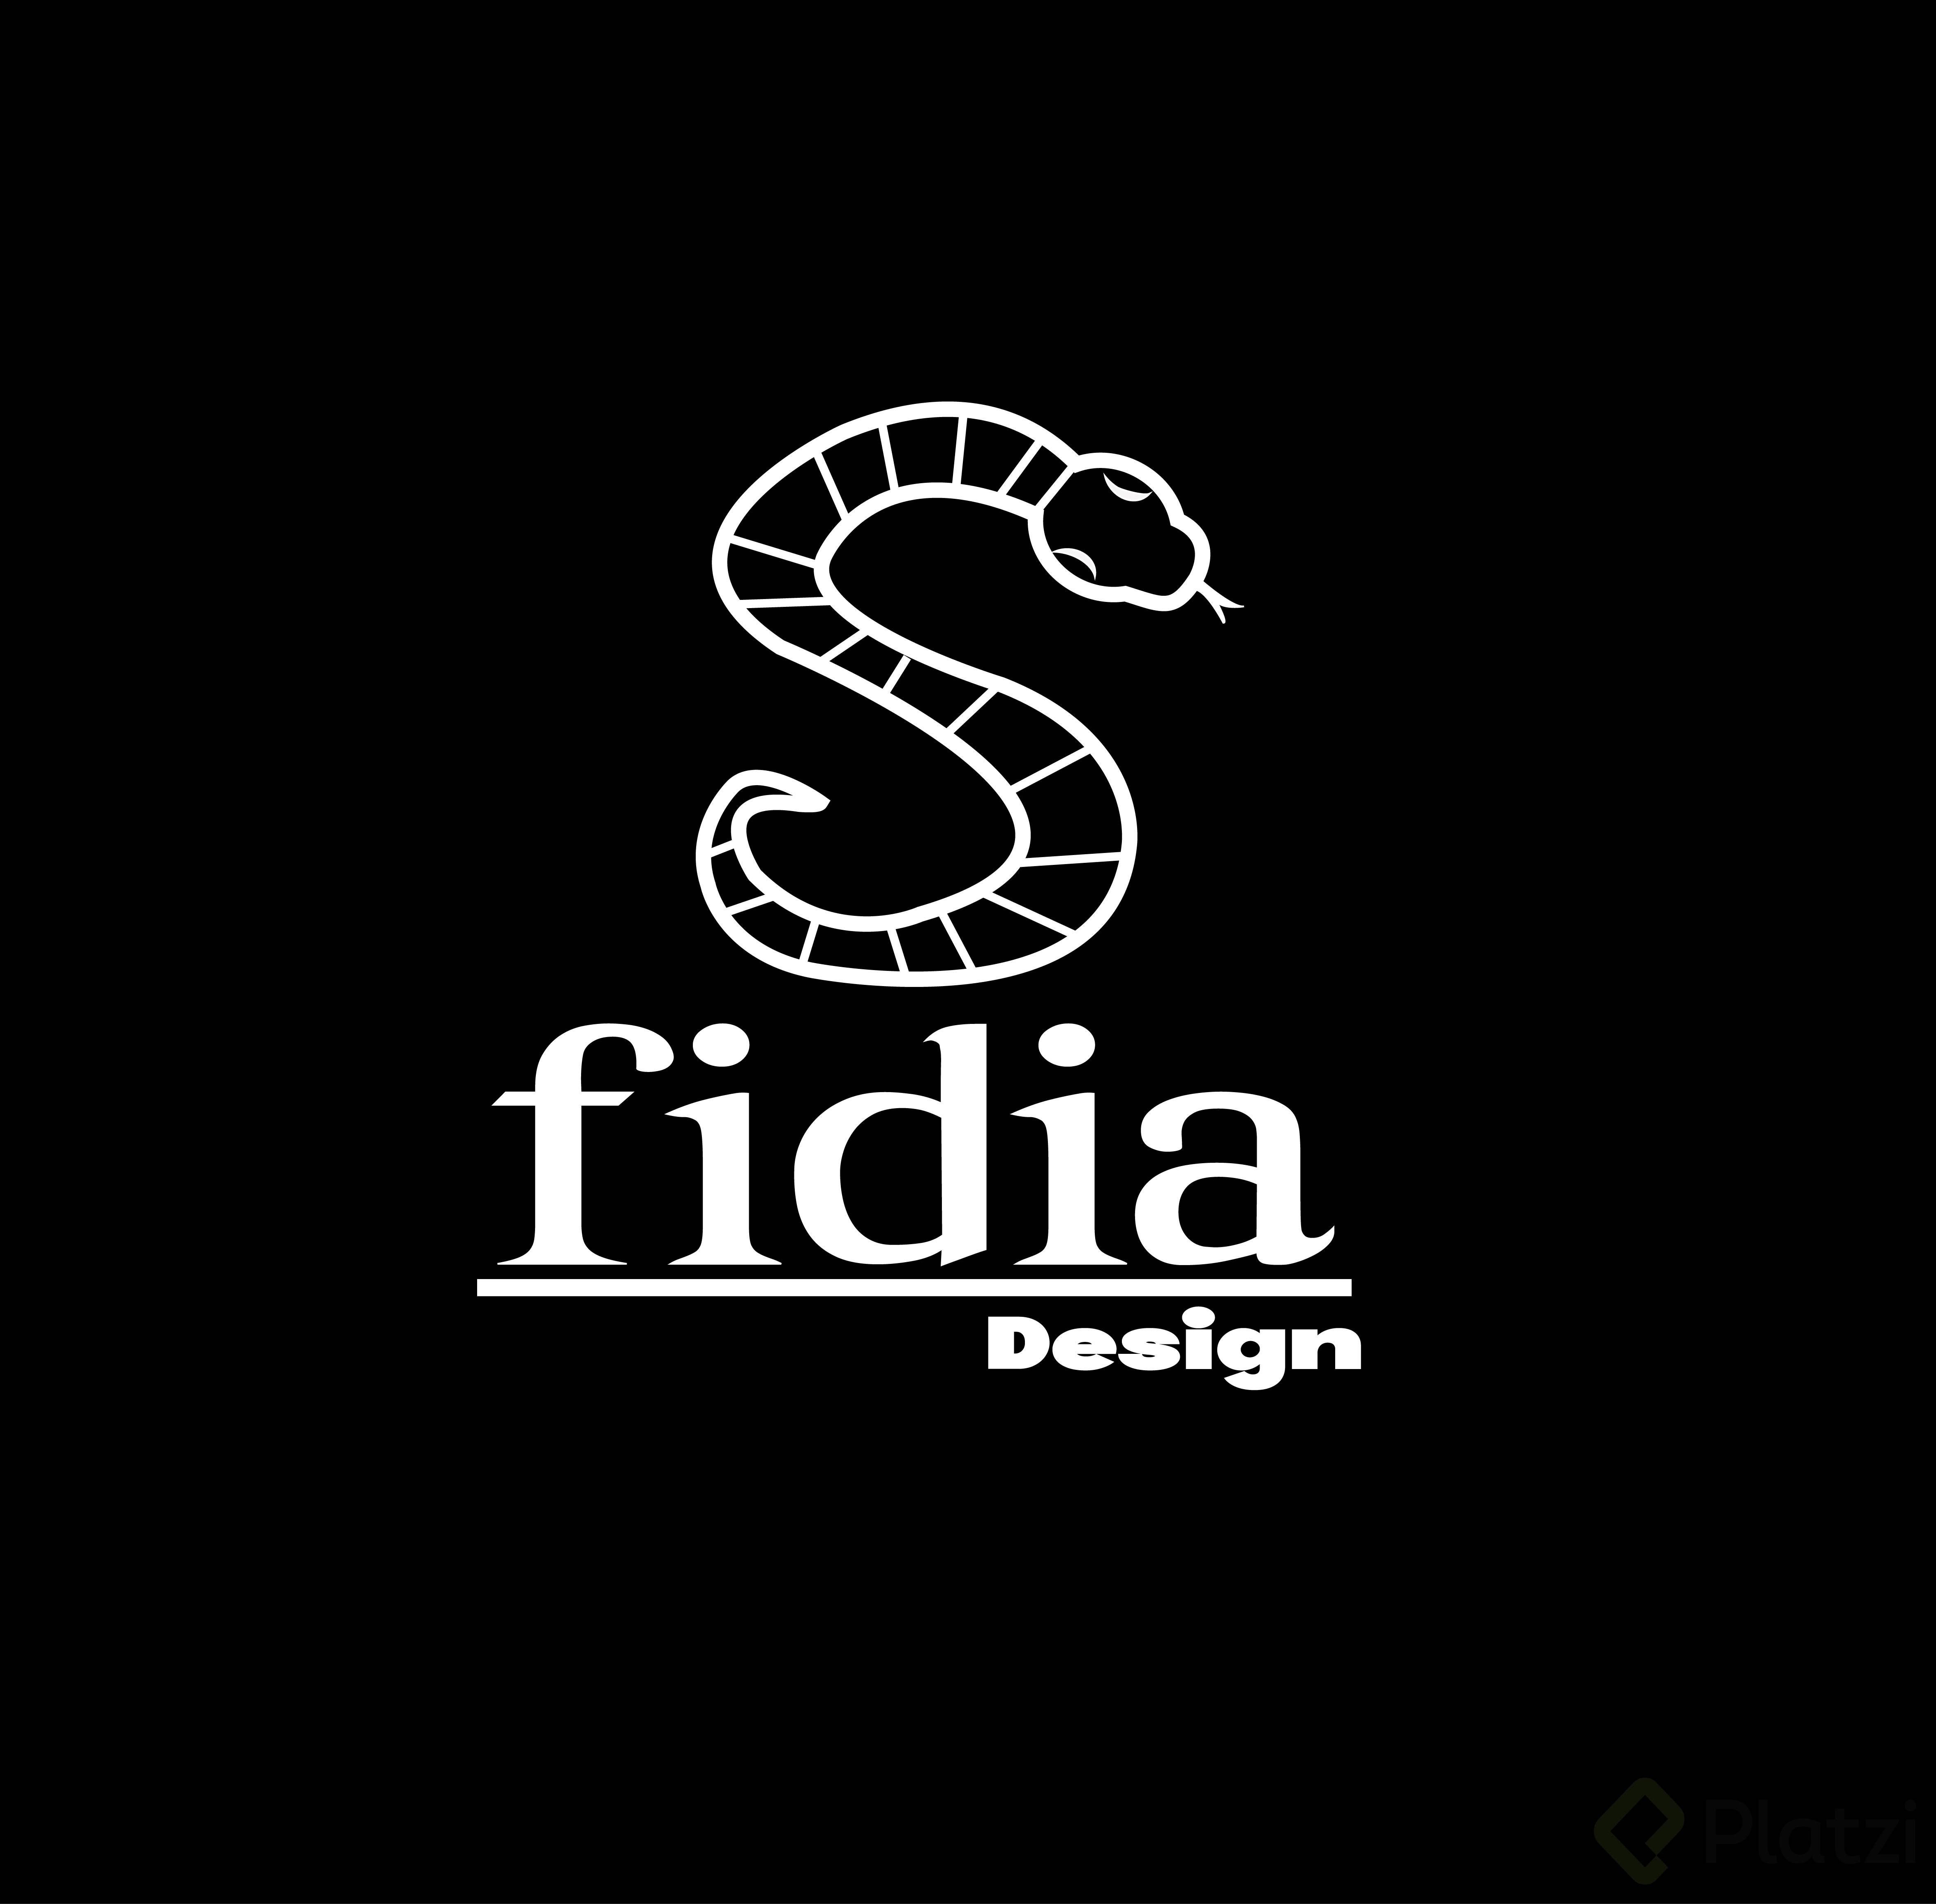 Fidia_logo Black.jpg